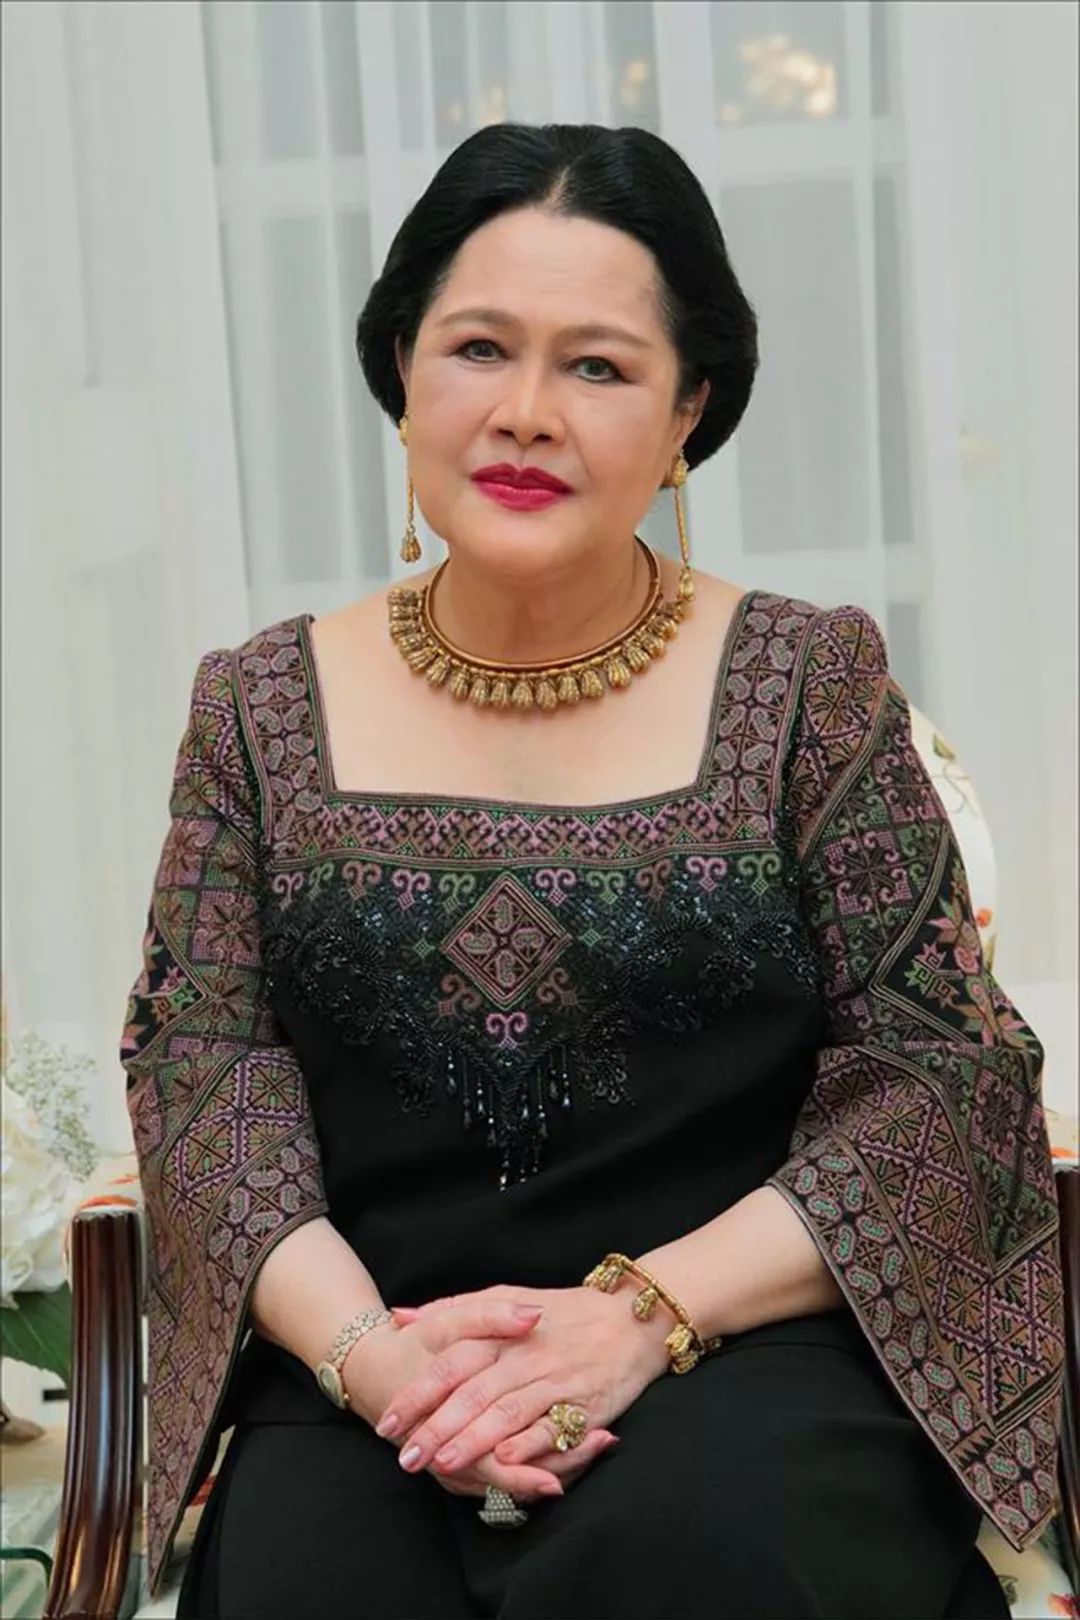 当地时间5月28日,泰国宫廷办公室发布了关于诗丽吉王太后的声明,宣布